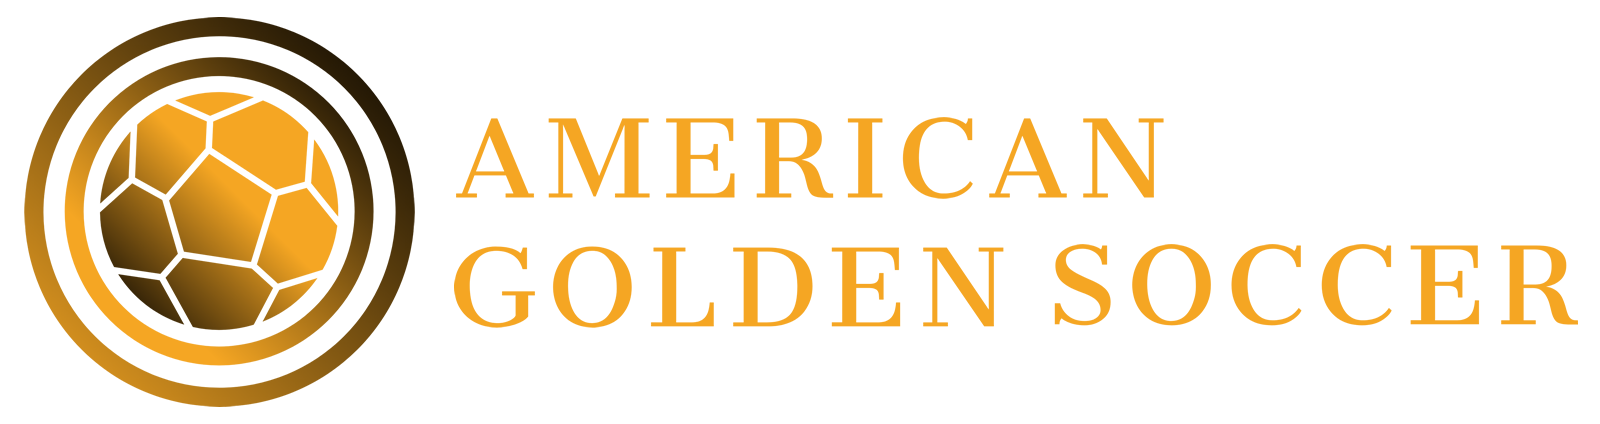 American Golden Soccer